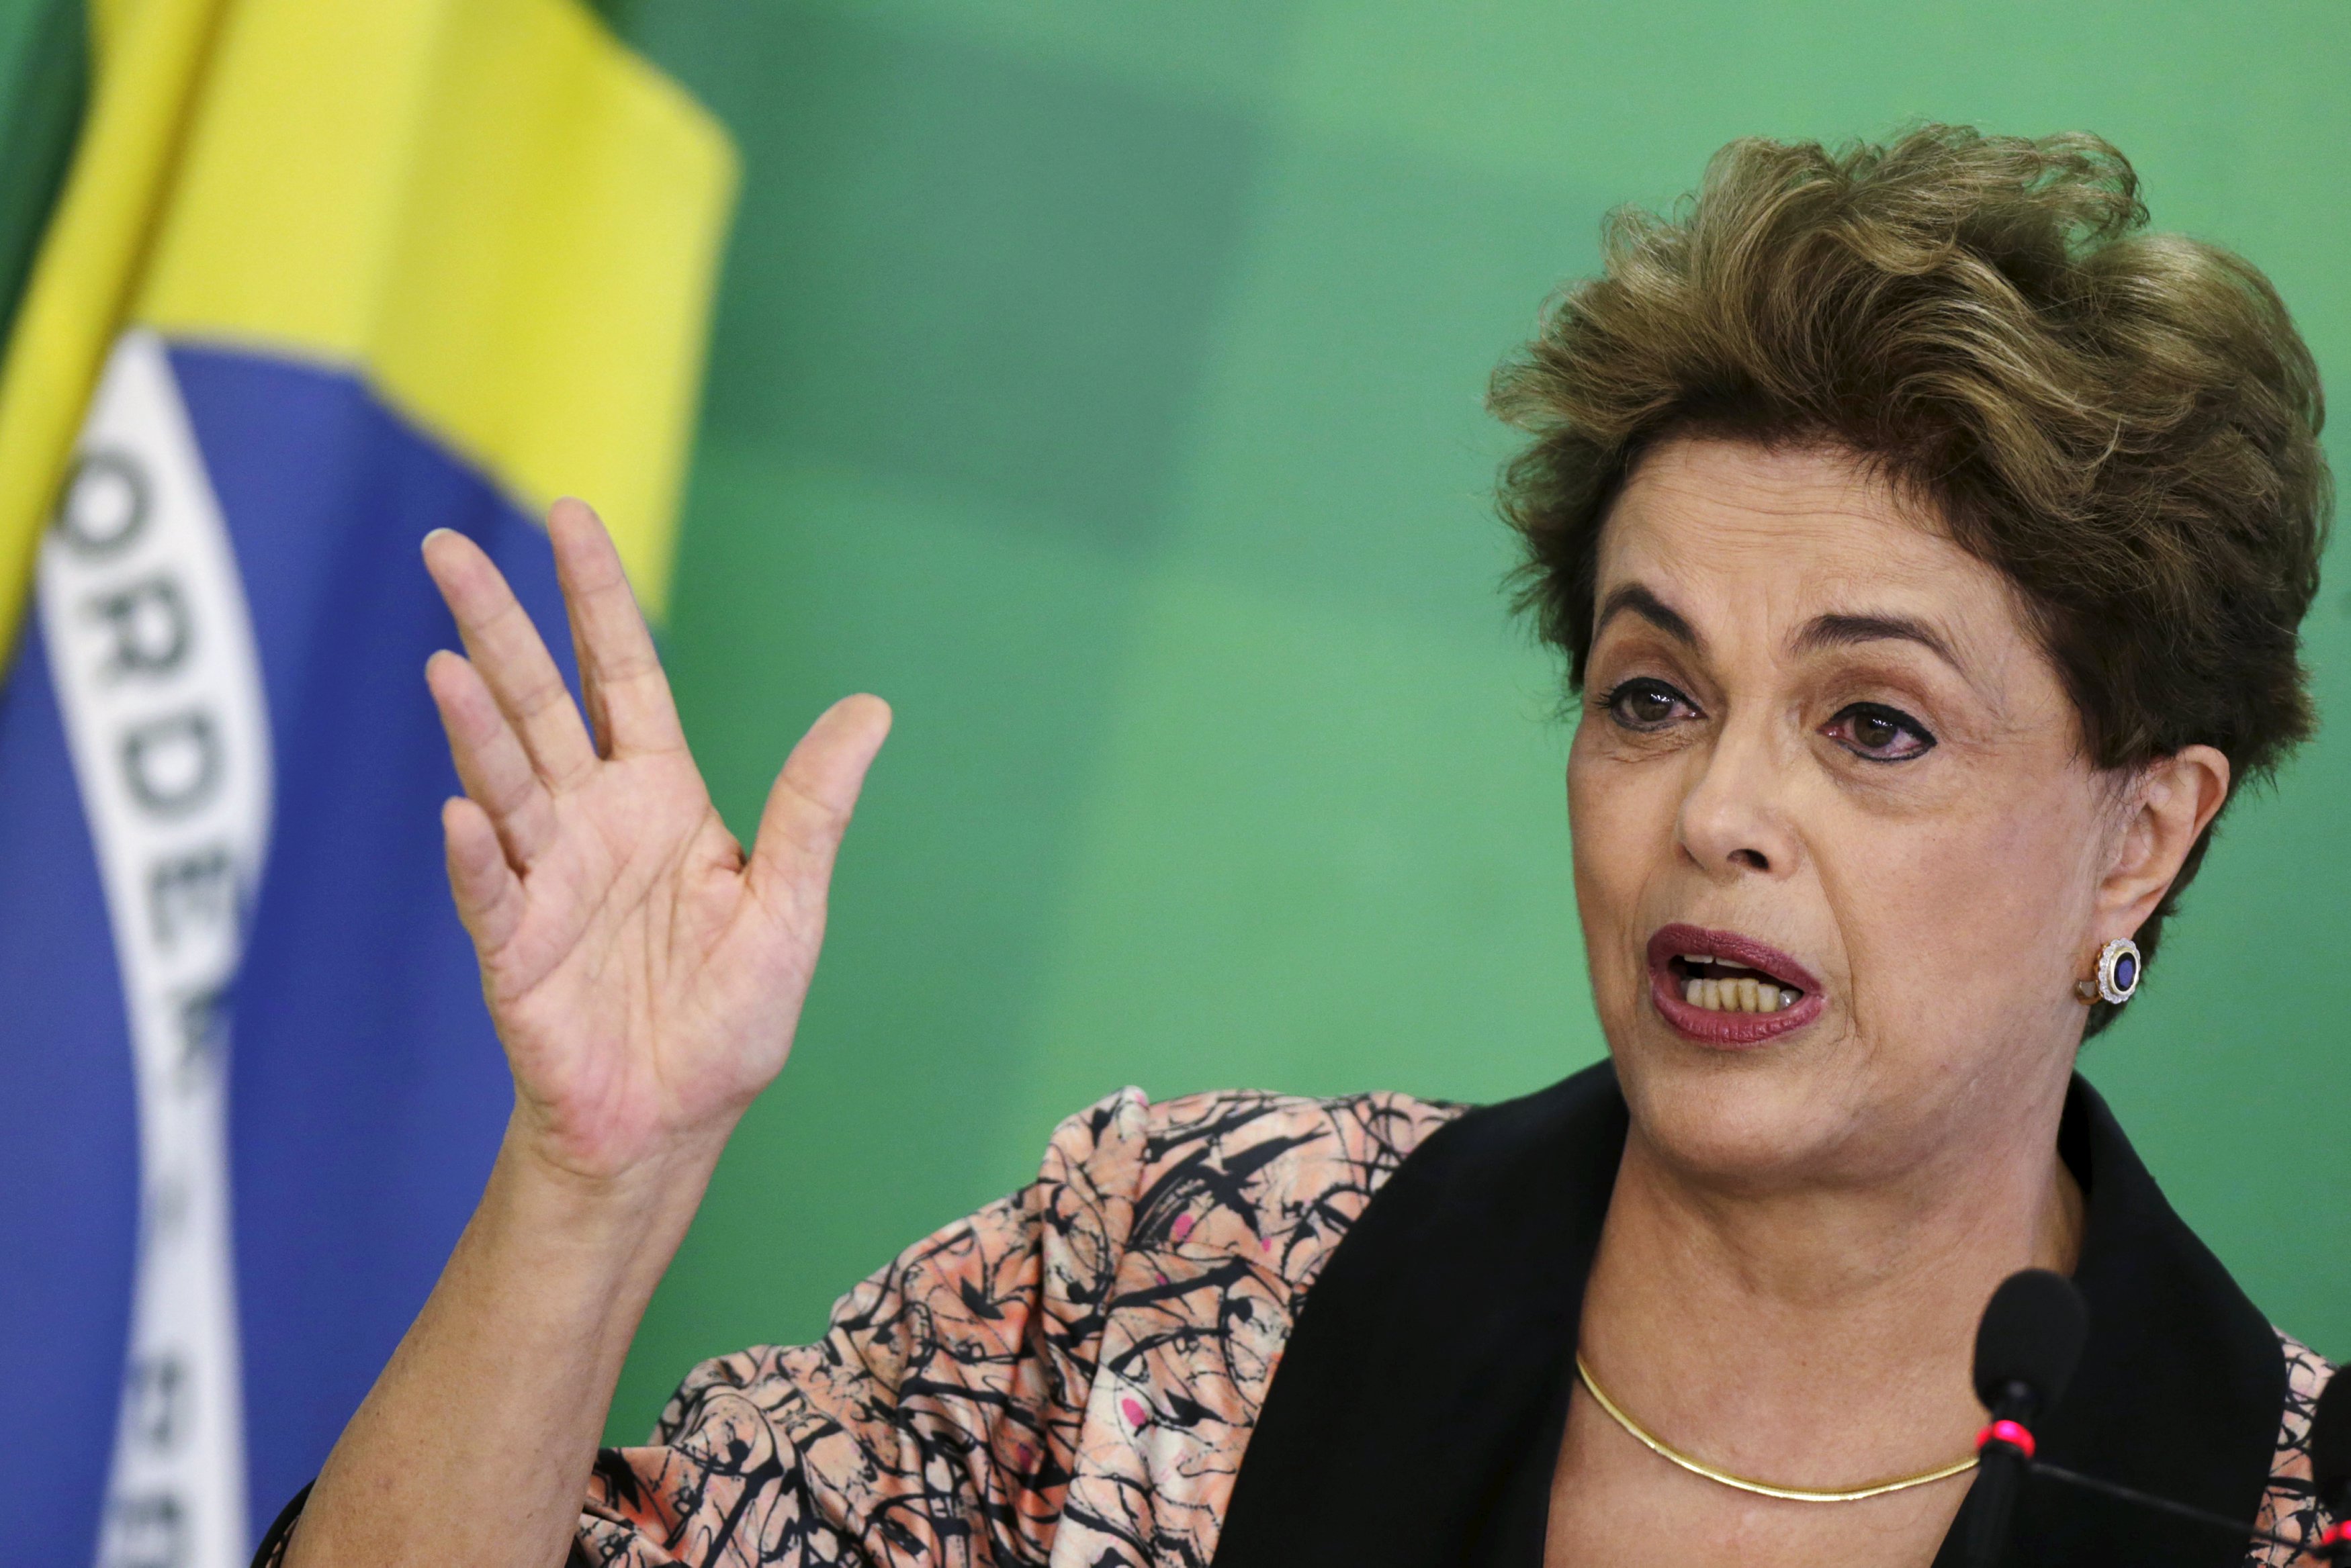 ¿A qué le teme? Rousseff pide “auxilio” a Mercosur y Unasur